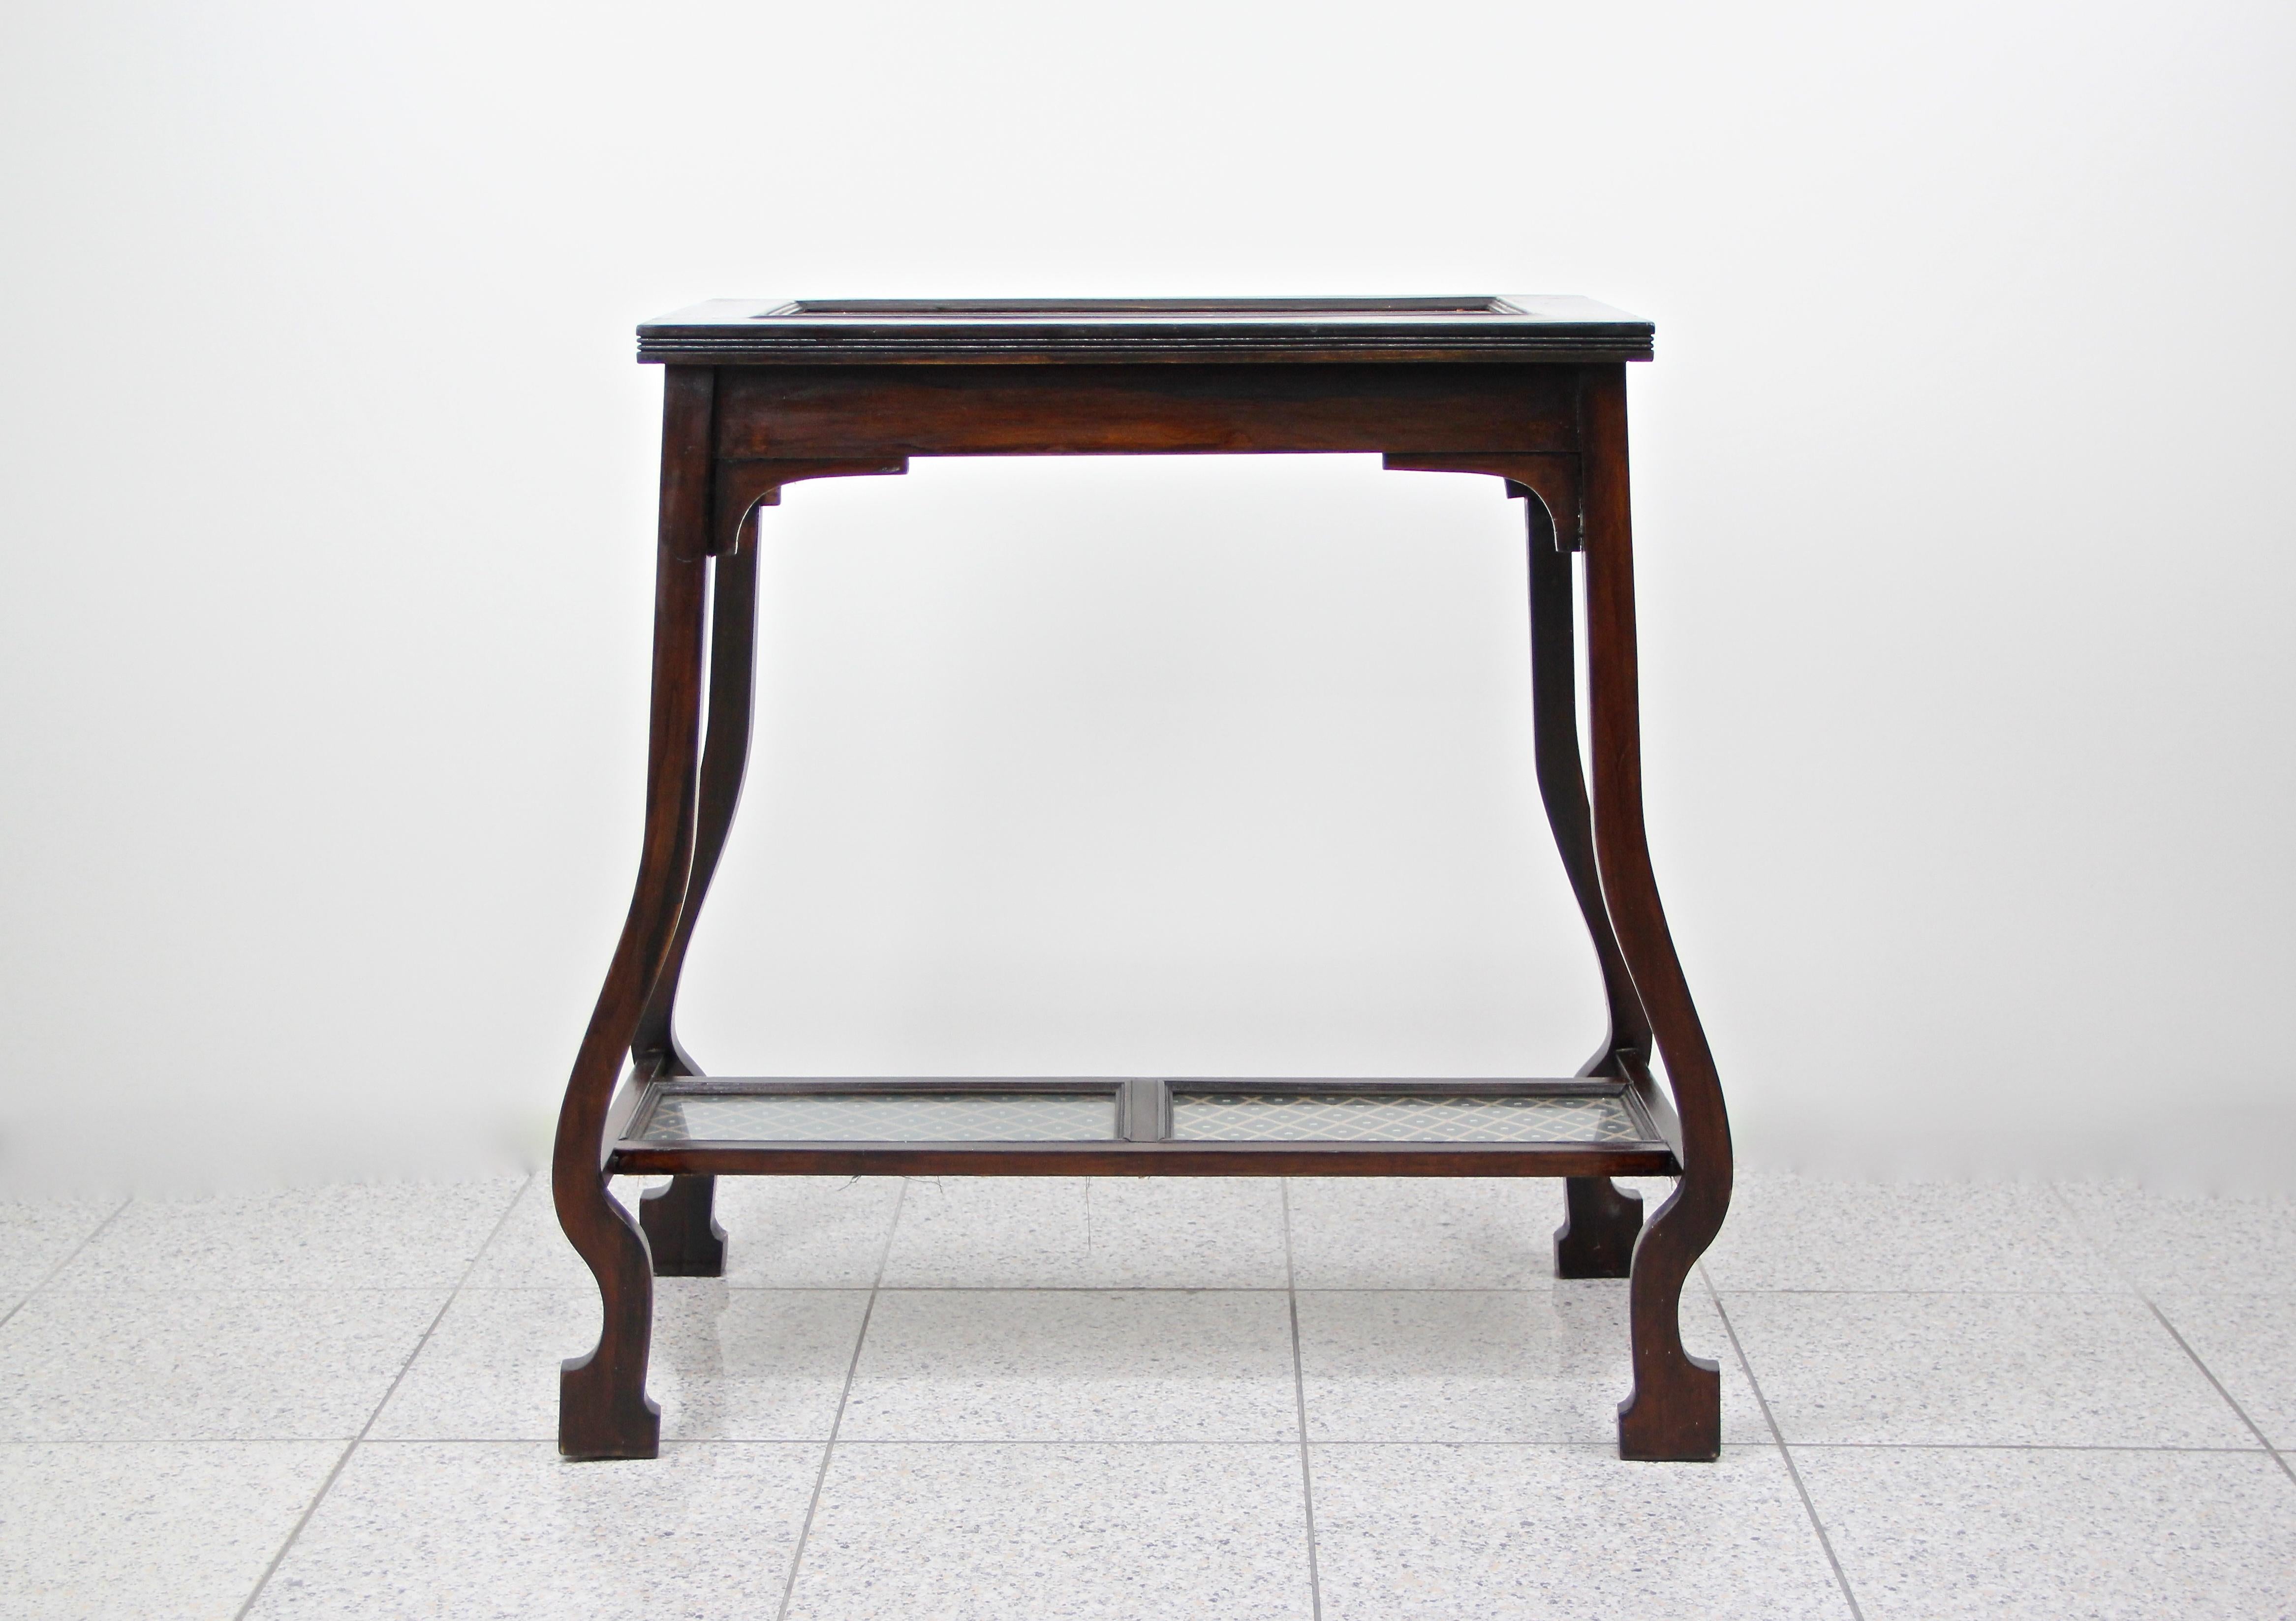 Table d'appoint Art nouveau inhabituelle du début du 20e siècle en Autriche. Vers 1910, à l'apogée de la période de l'Art Nouveau, se trouve cette table en bois de hêtre au design unique, garnie d'un beau brun foncé presque noir. La plaque